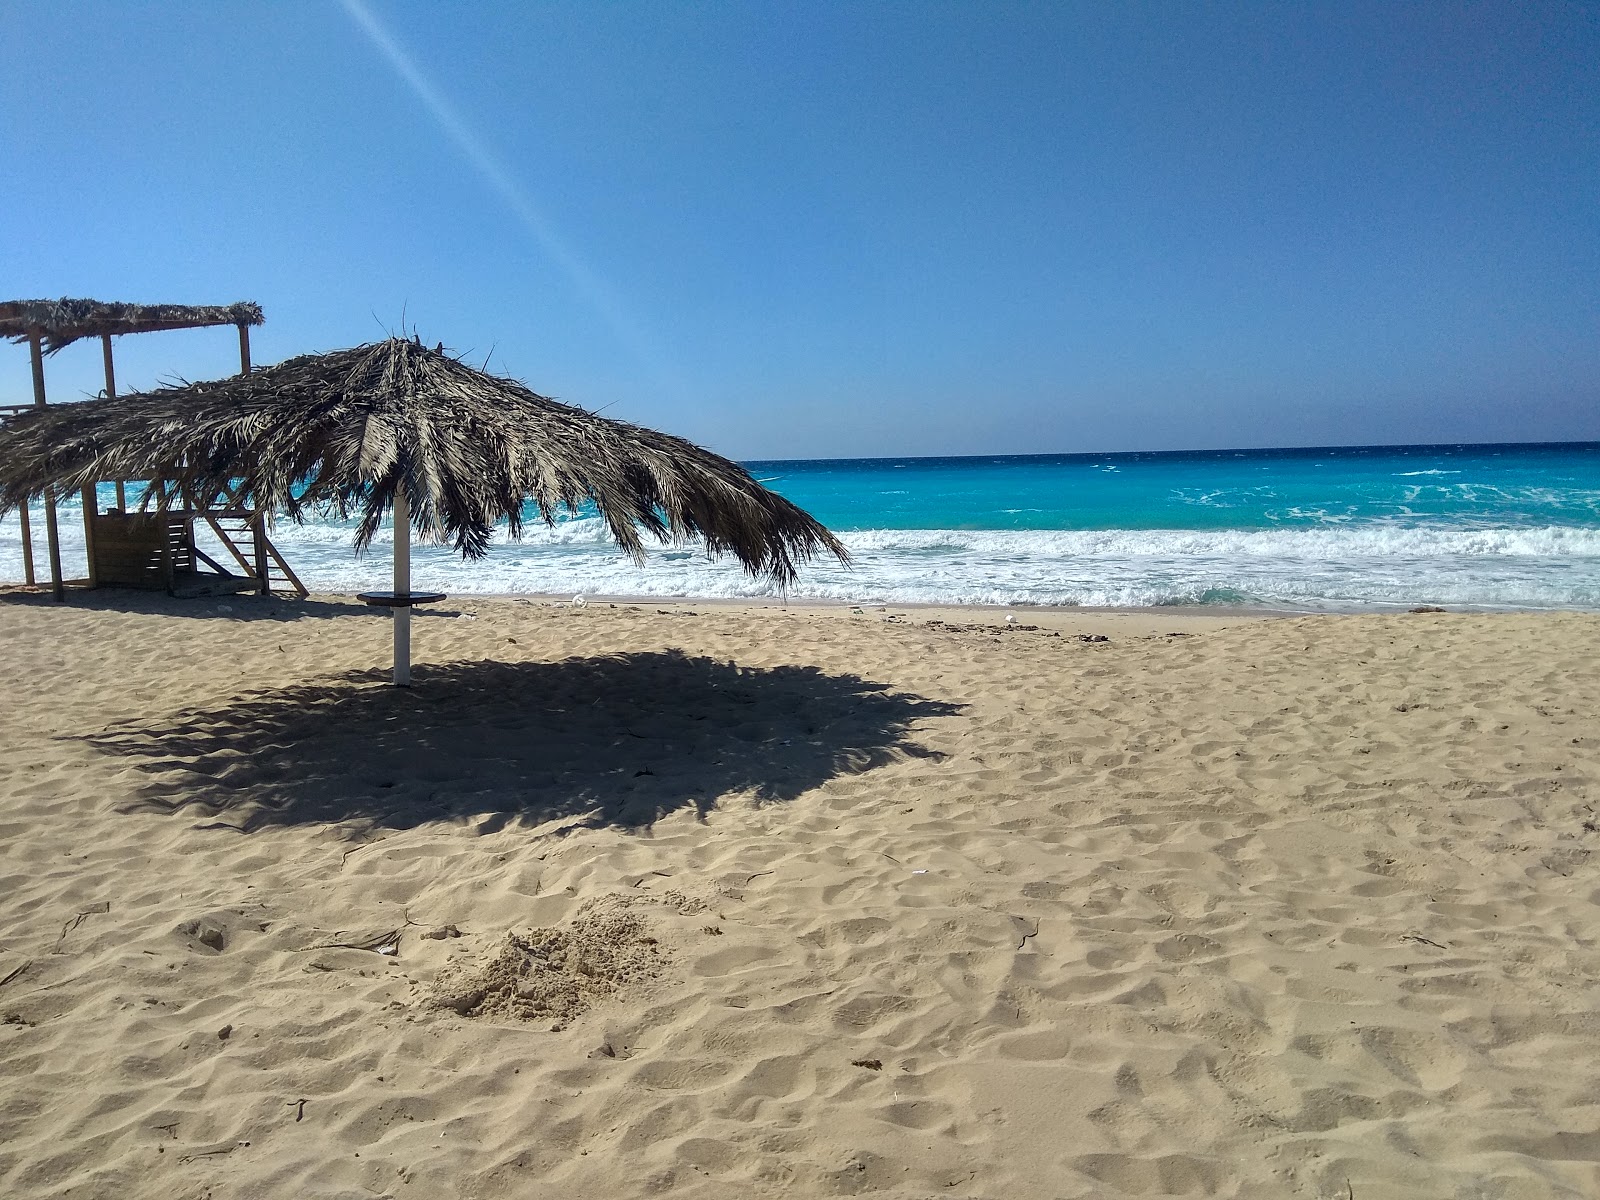 Fotografie cu Amwaj Beach - locul popular printre cunoscătorii de relaxare